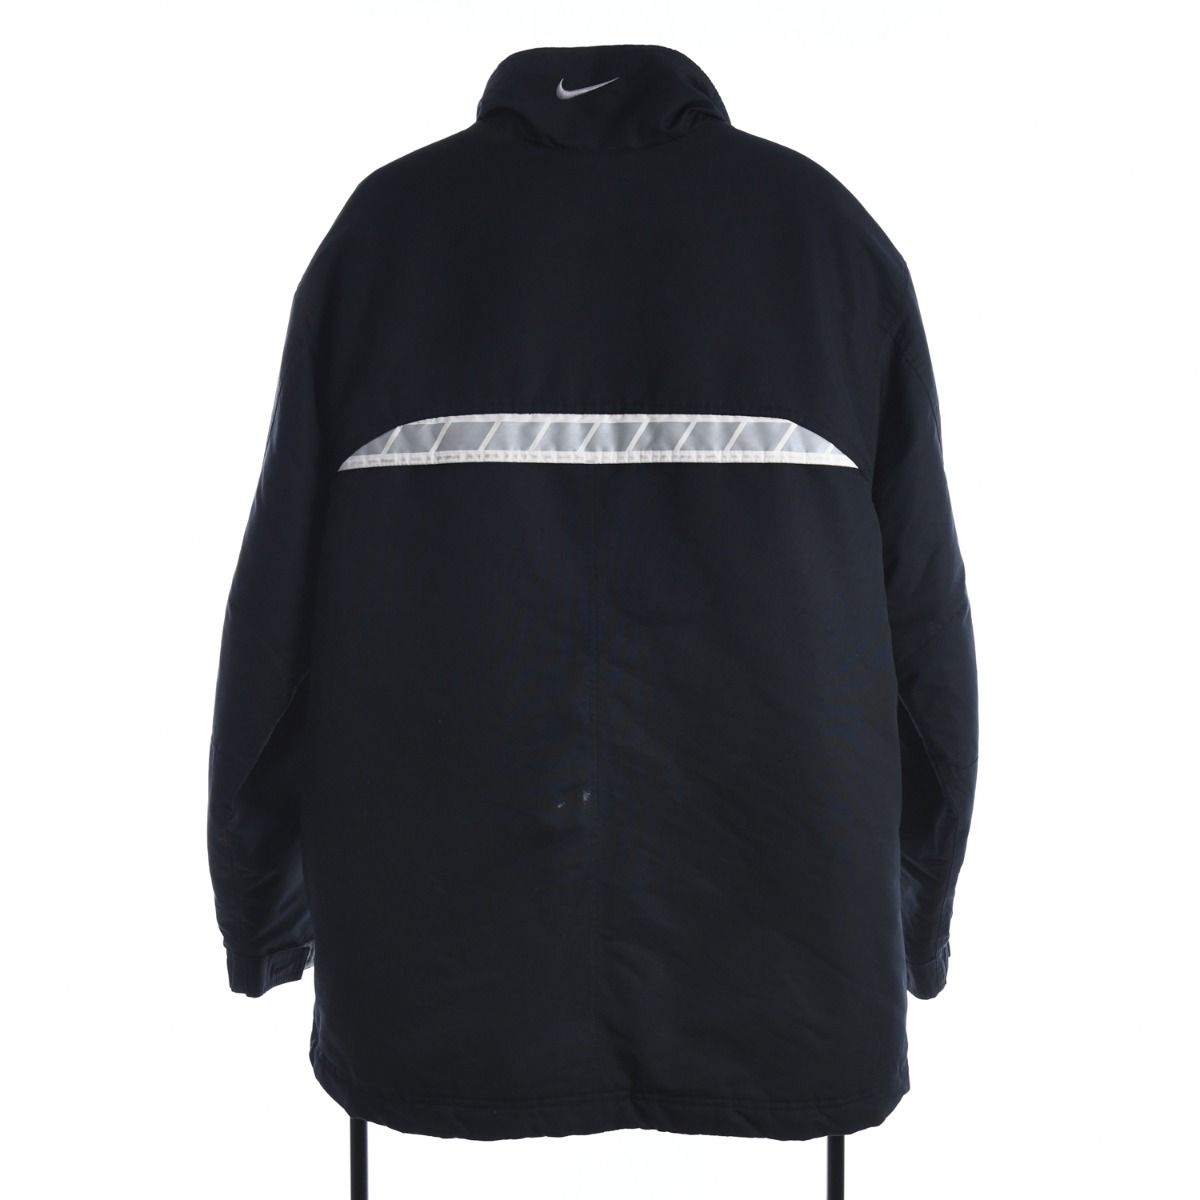 Nike Early 2000s Fleece Lined Jacket